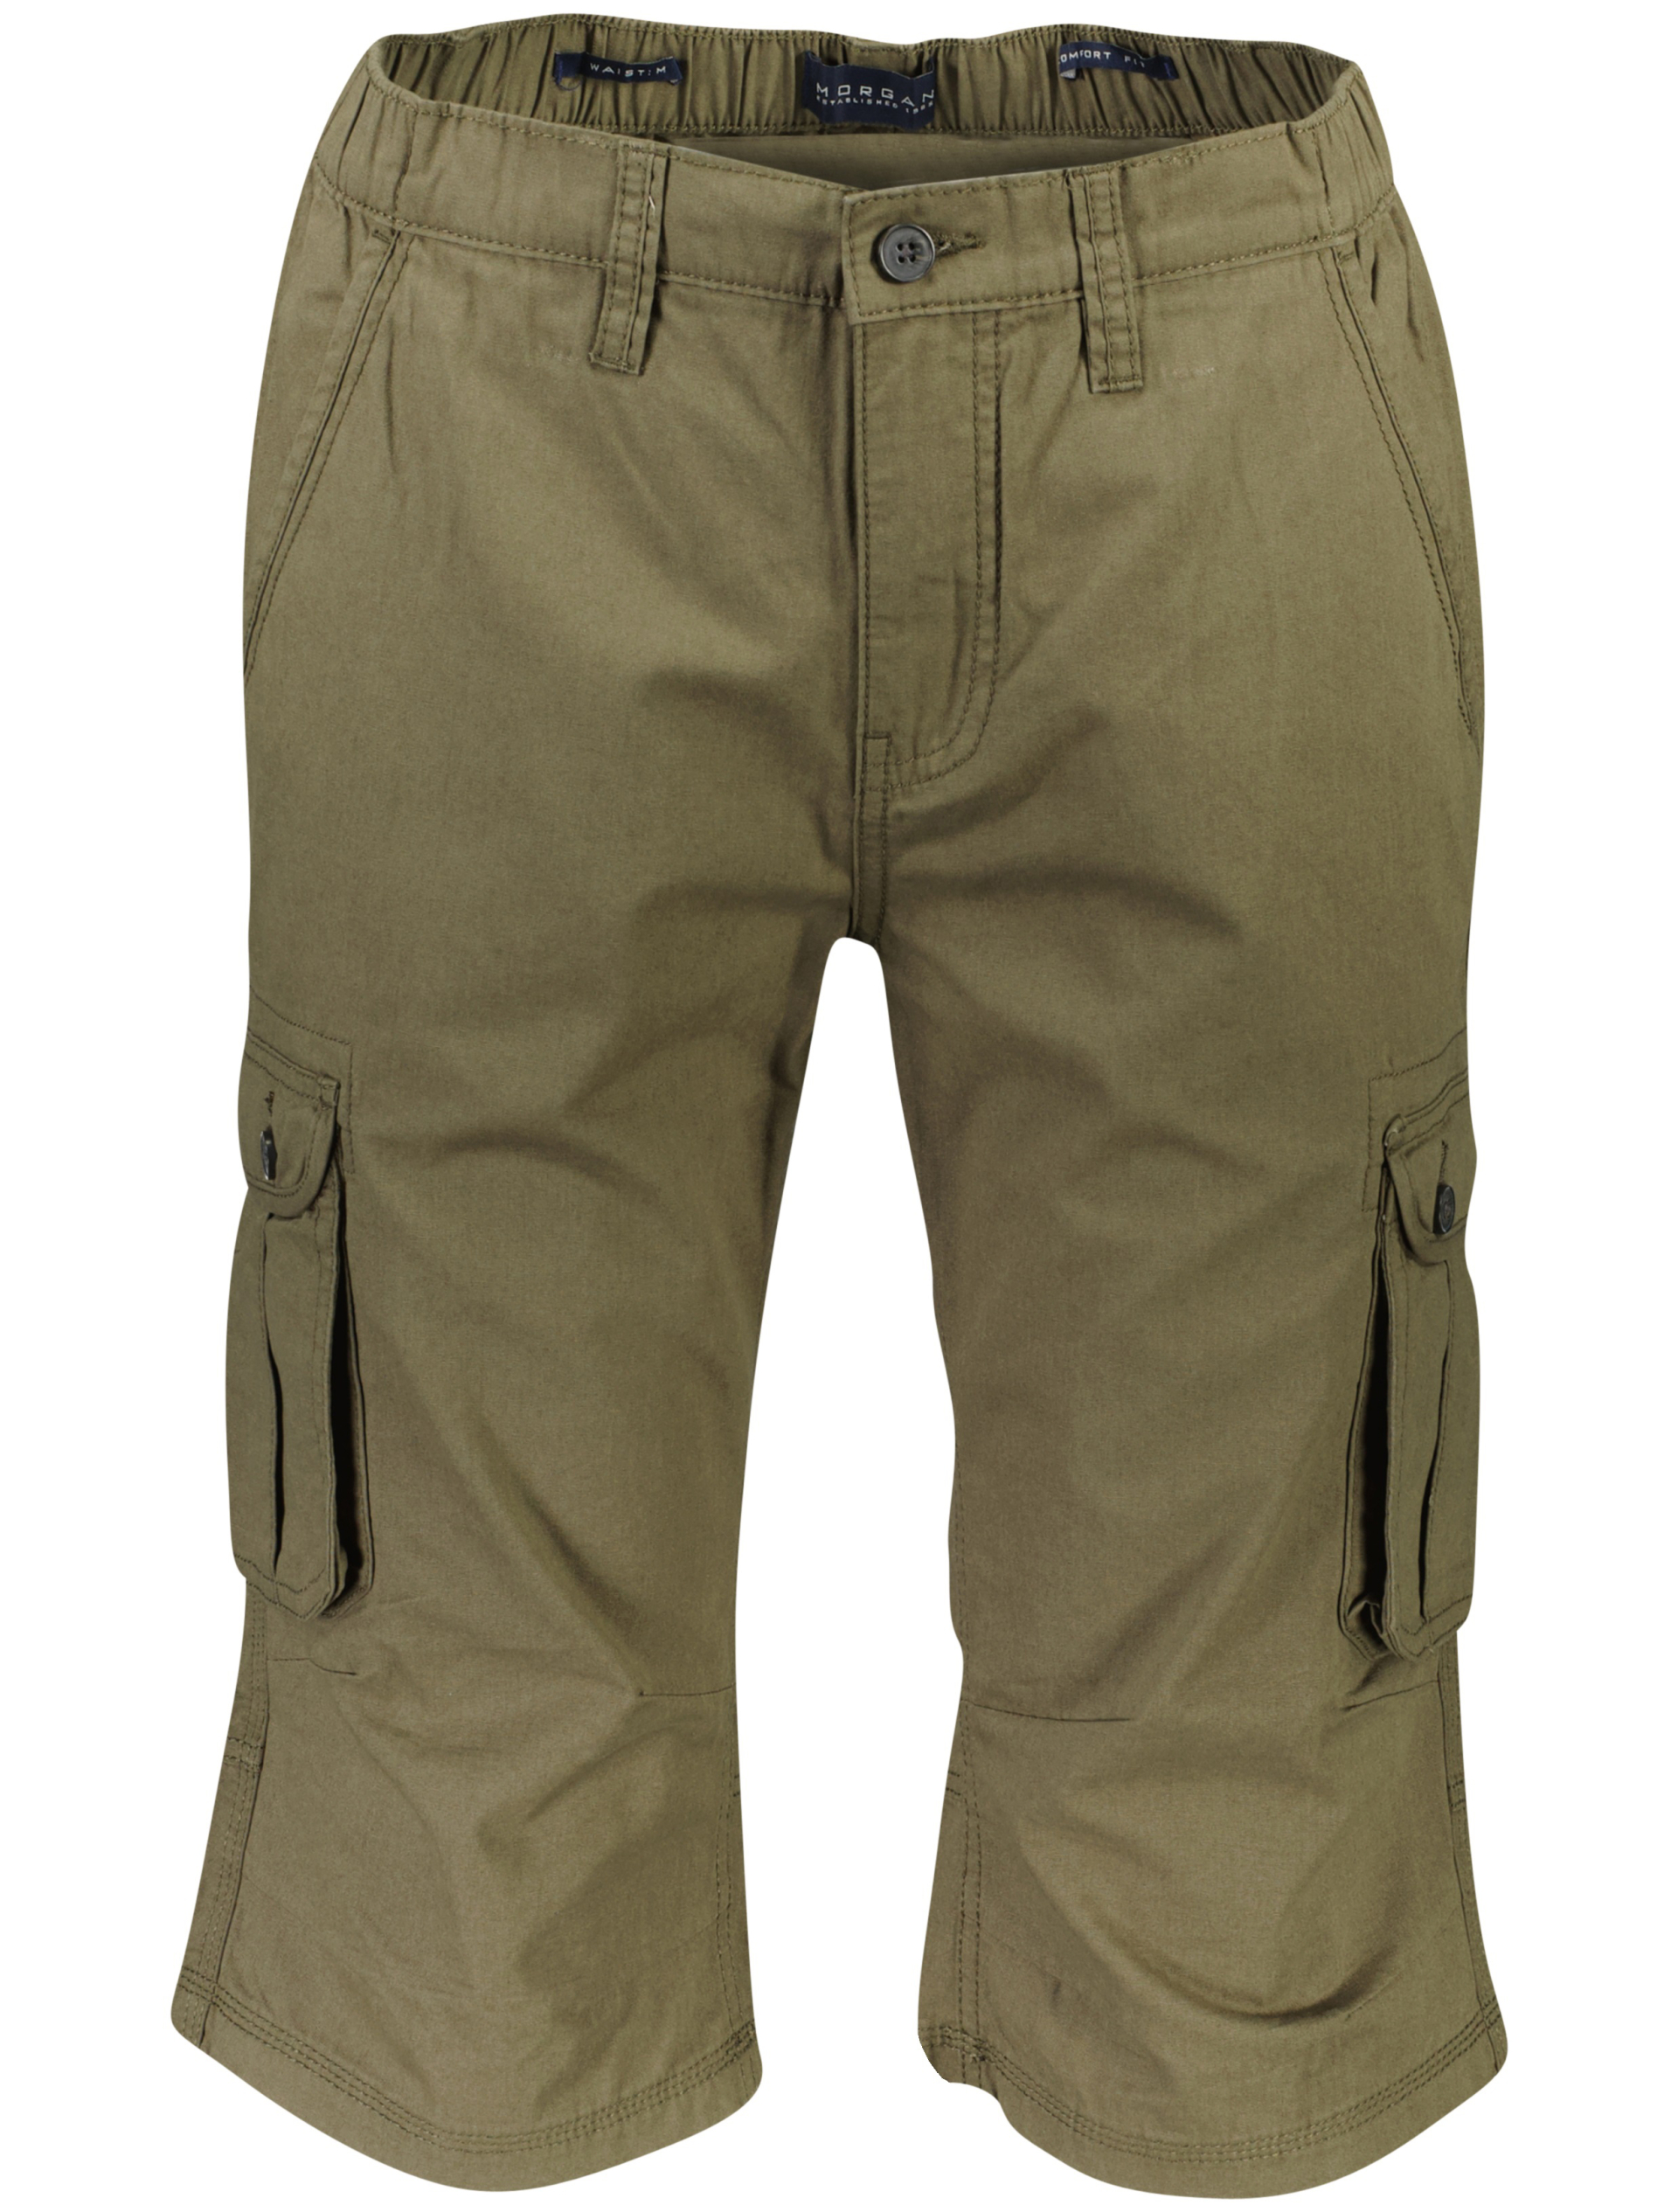 Morgan Cargo shorts grøn / army